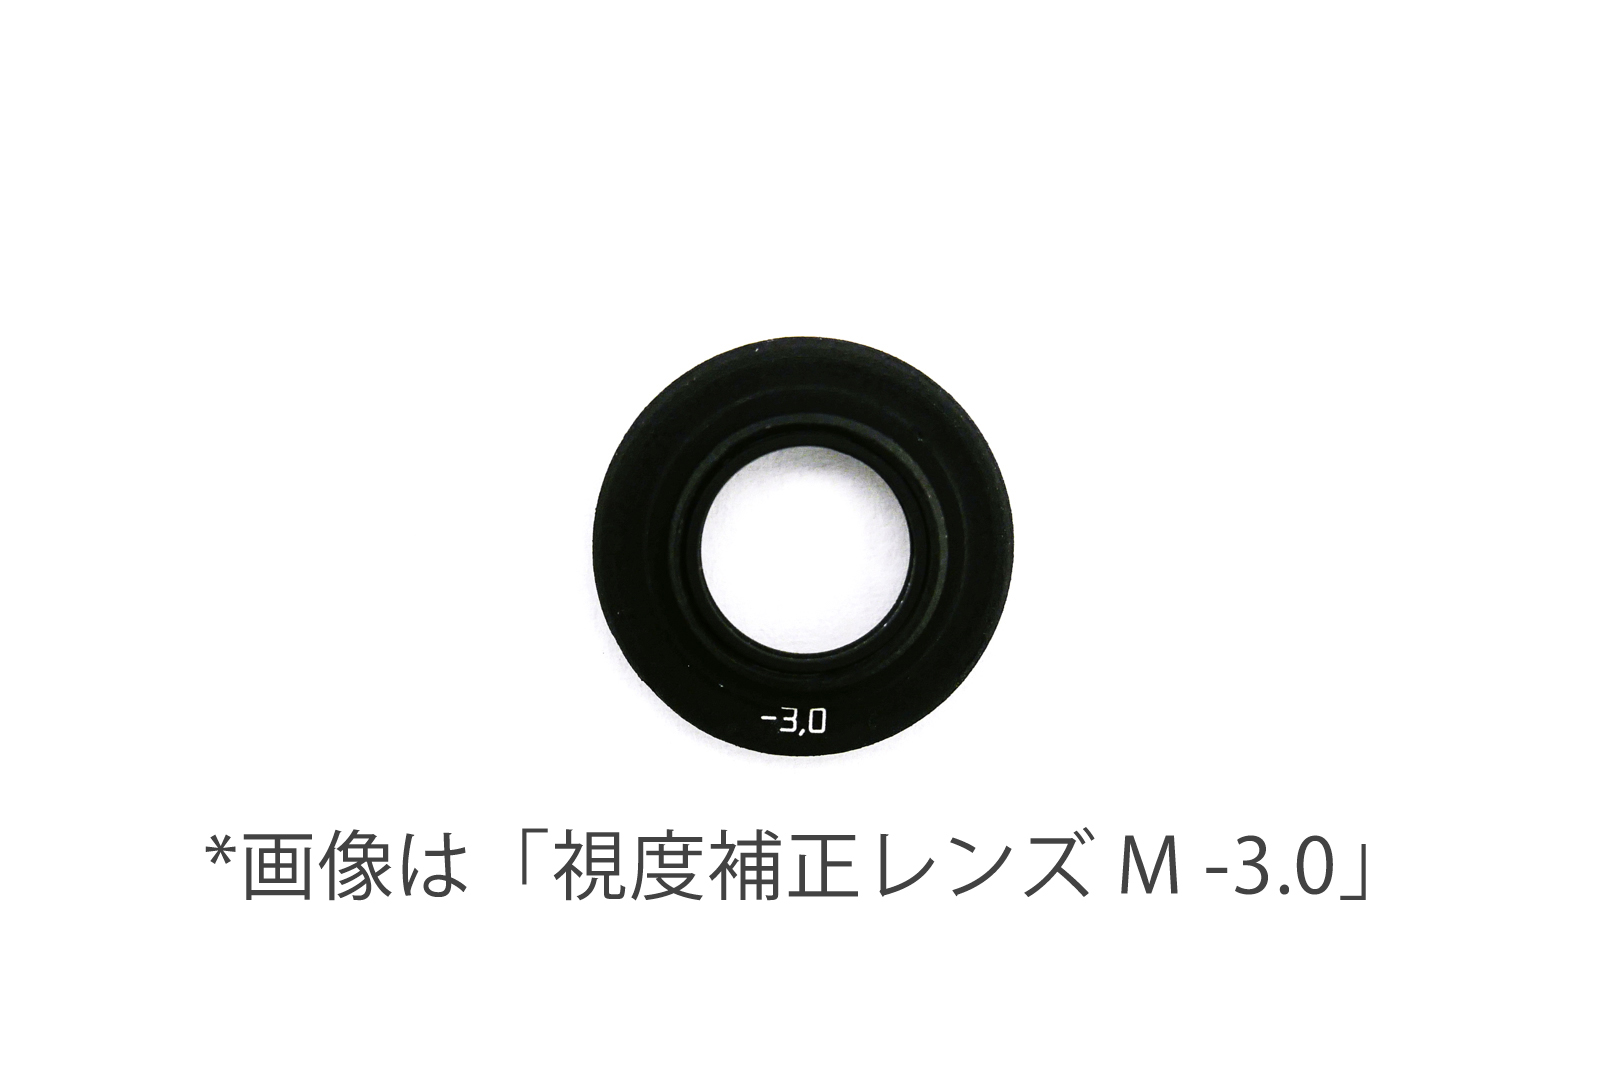 【ハンドメイド製】 ライカM用の視度補正レンズ-1.5 dpt